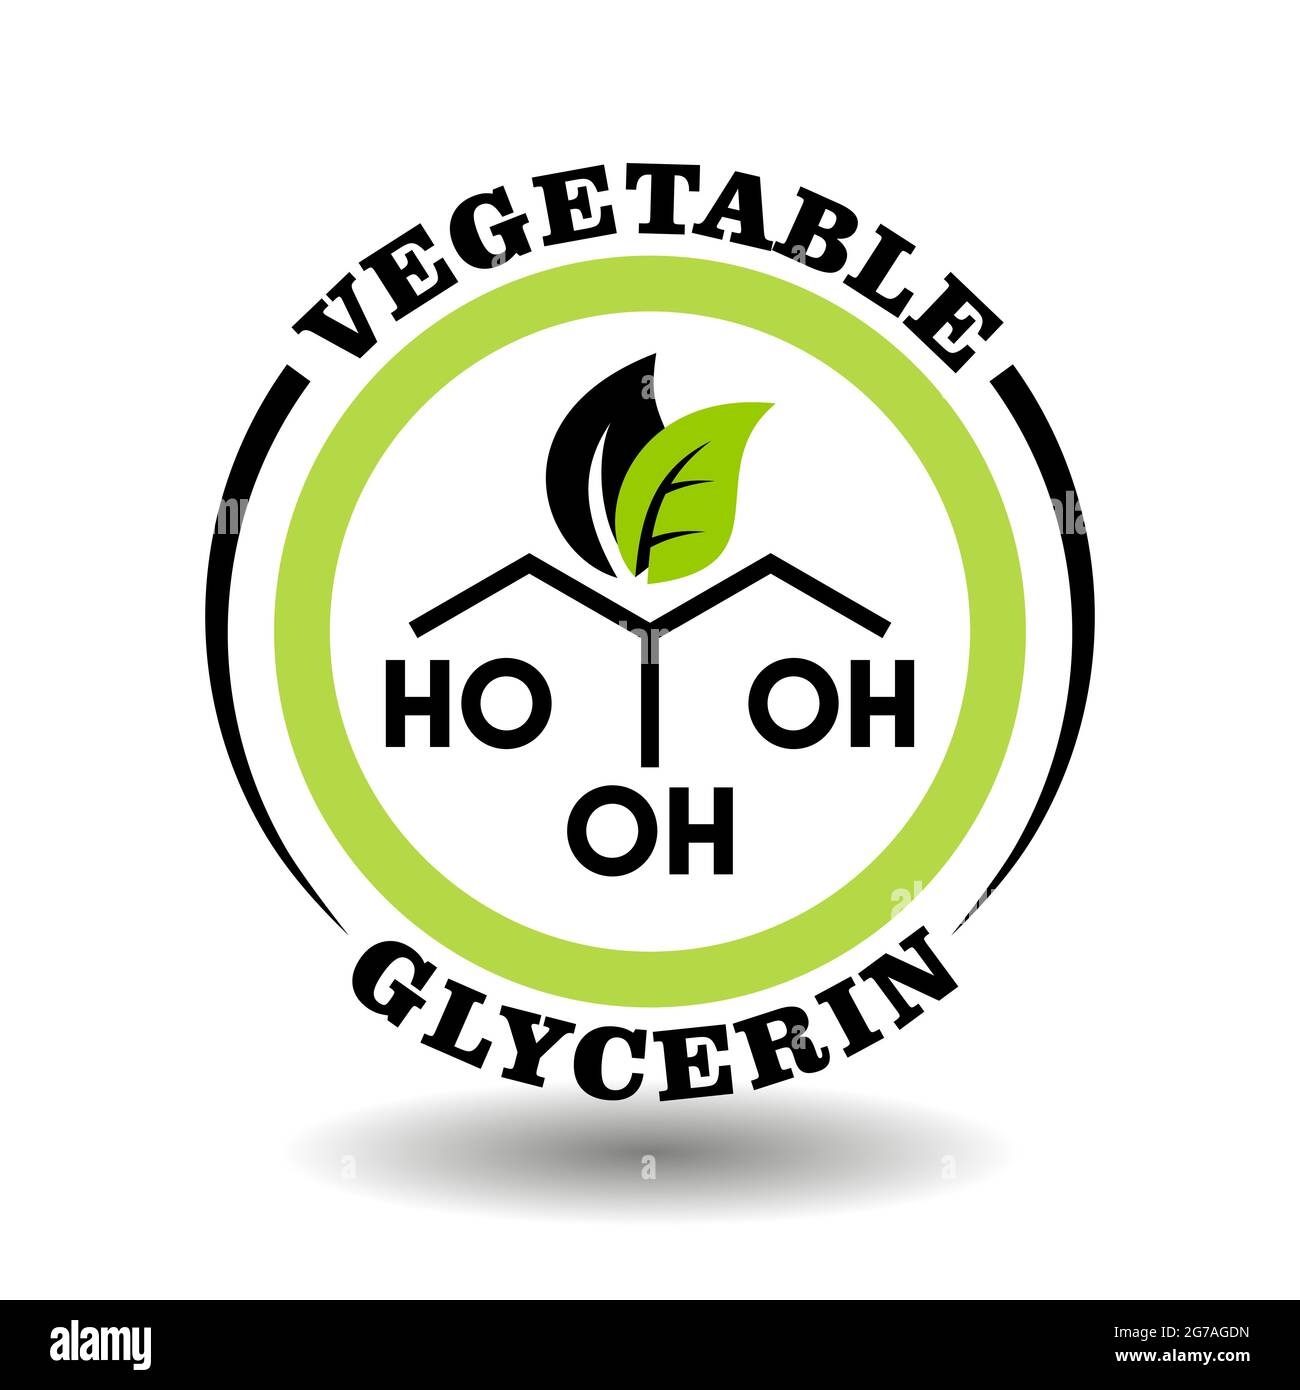 Icône ronde créative Glycerin végétal avec signe de formule chimique et symbole de feuilles vertes pour le logo des aliments biologiques, pictogramme des cosmétiques naturels, médical Illustration de Vecteur